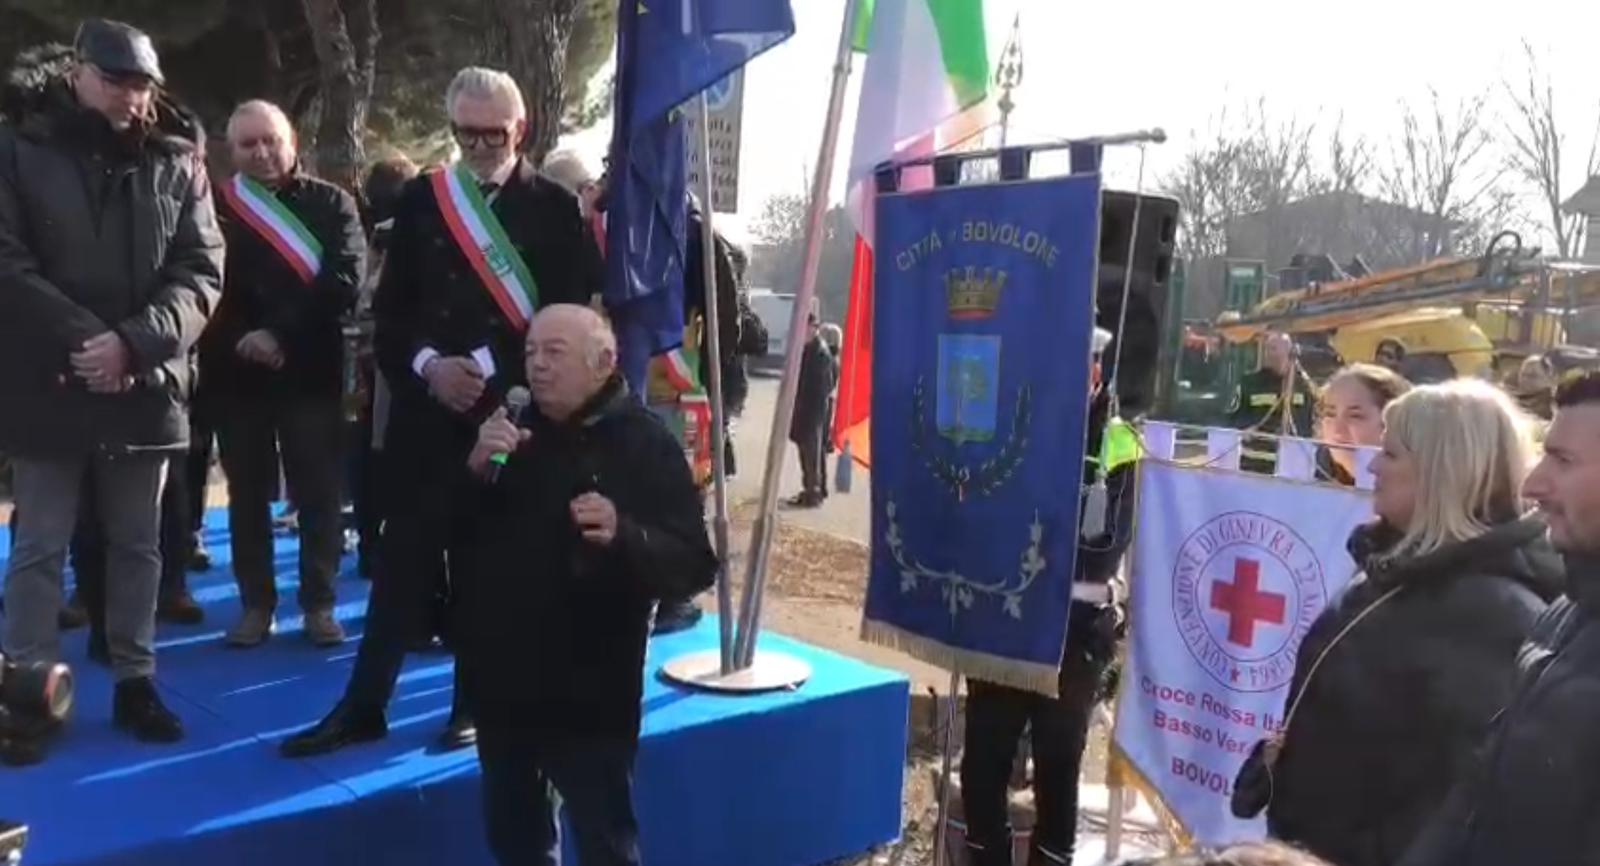 La protesta contadina alla Fiera agricola di S.Biagio a Bovolone 